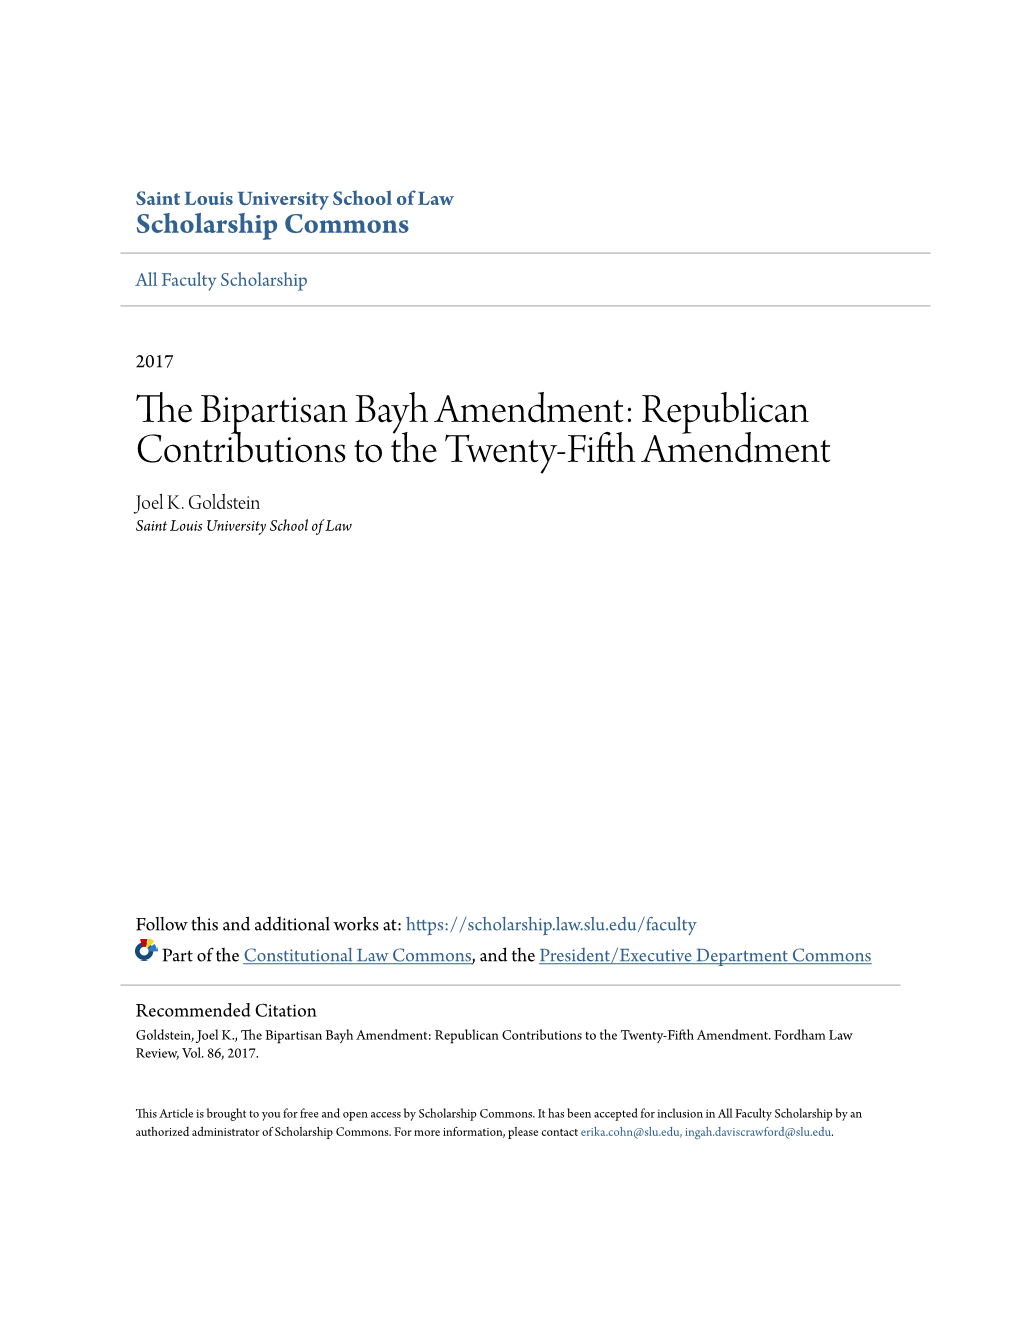 Republican Contributions to the Twenty-Fifth Amendment Joel K